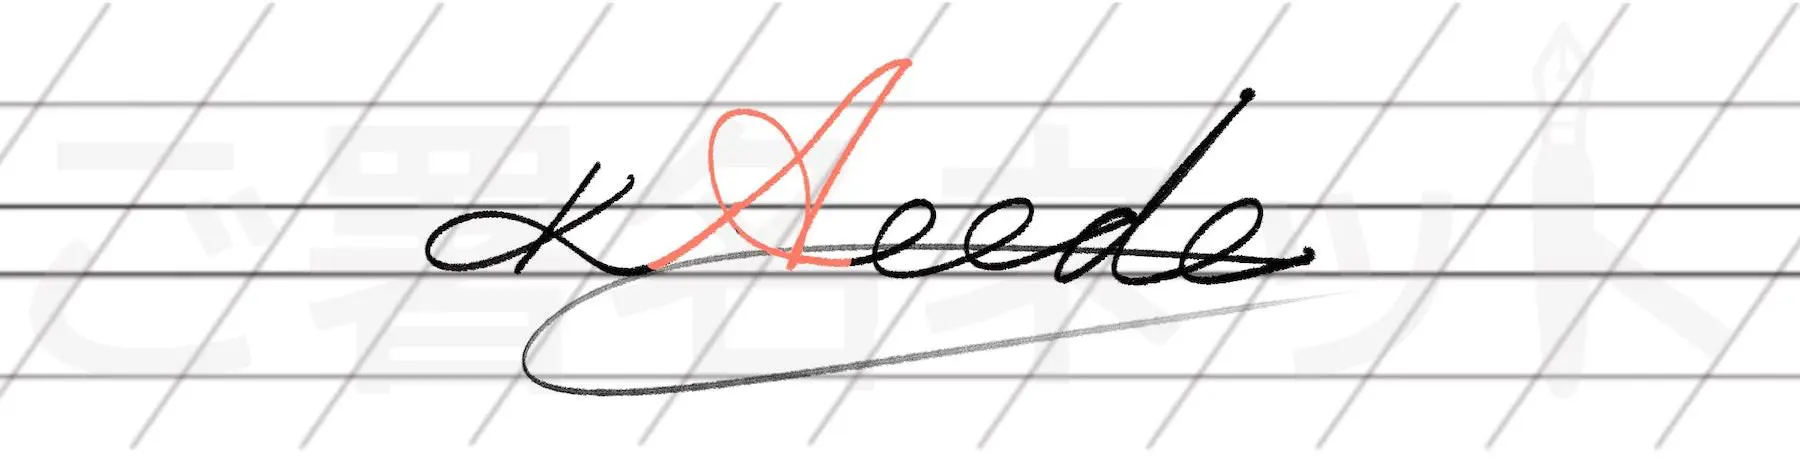 カリグラフィを用いた手書きサインの例サンプル